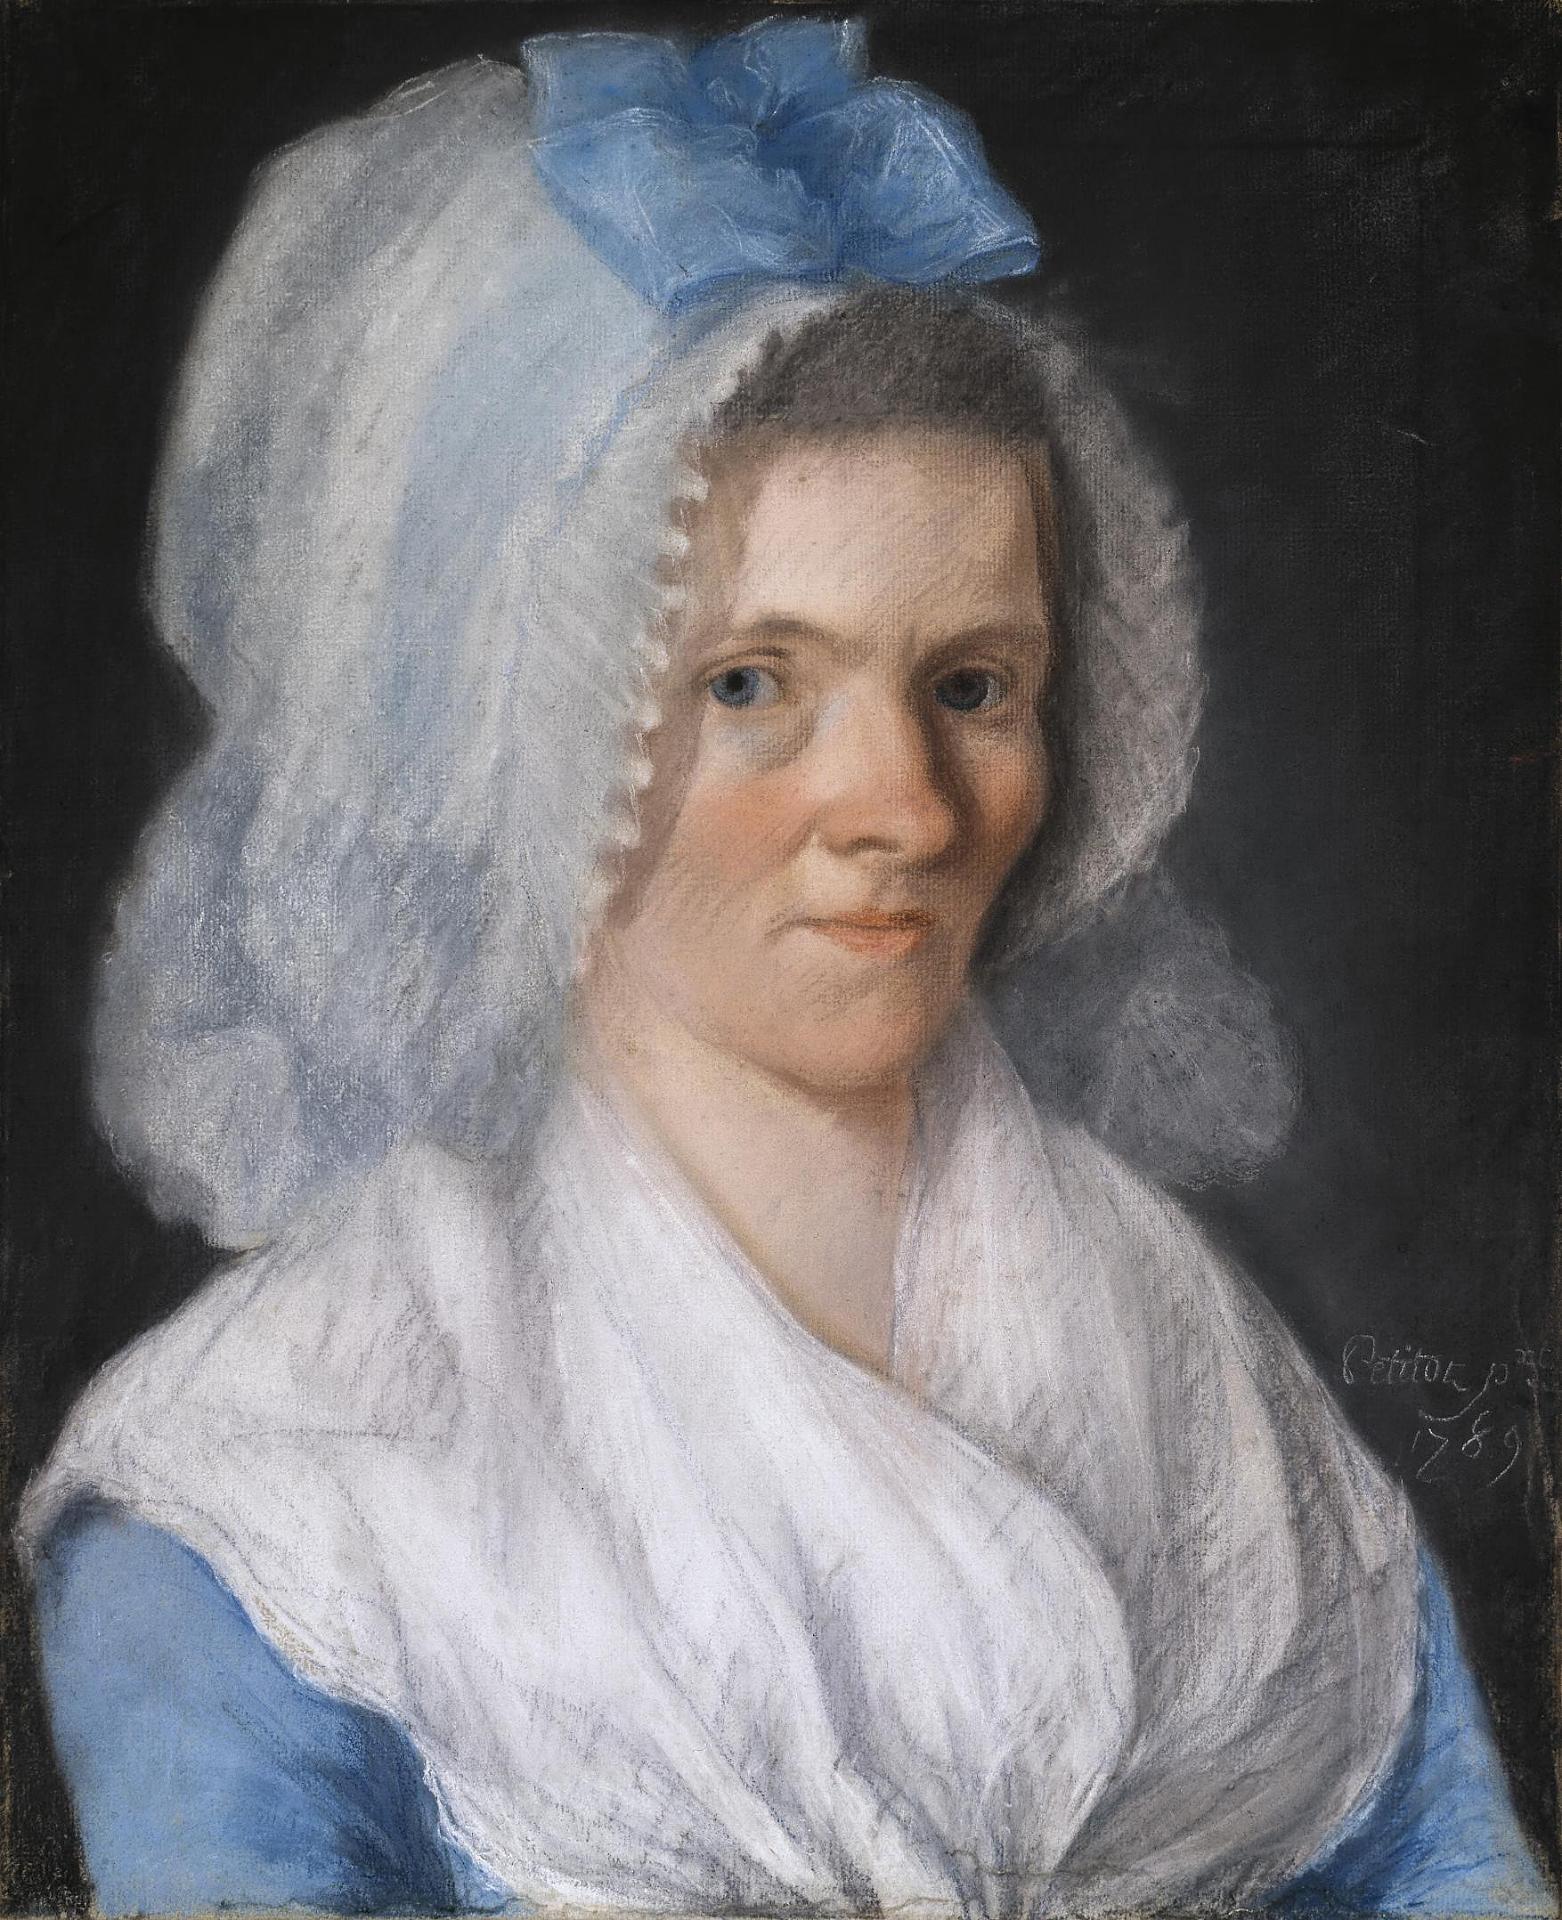 Жозеф Петито. "Портрет пожилой дамы в голубом чепце". 1789.